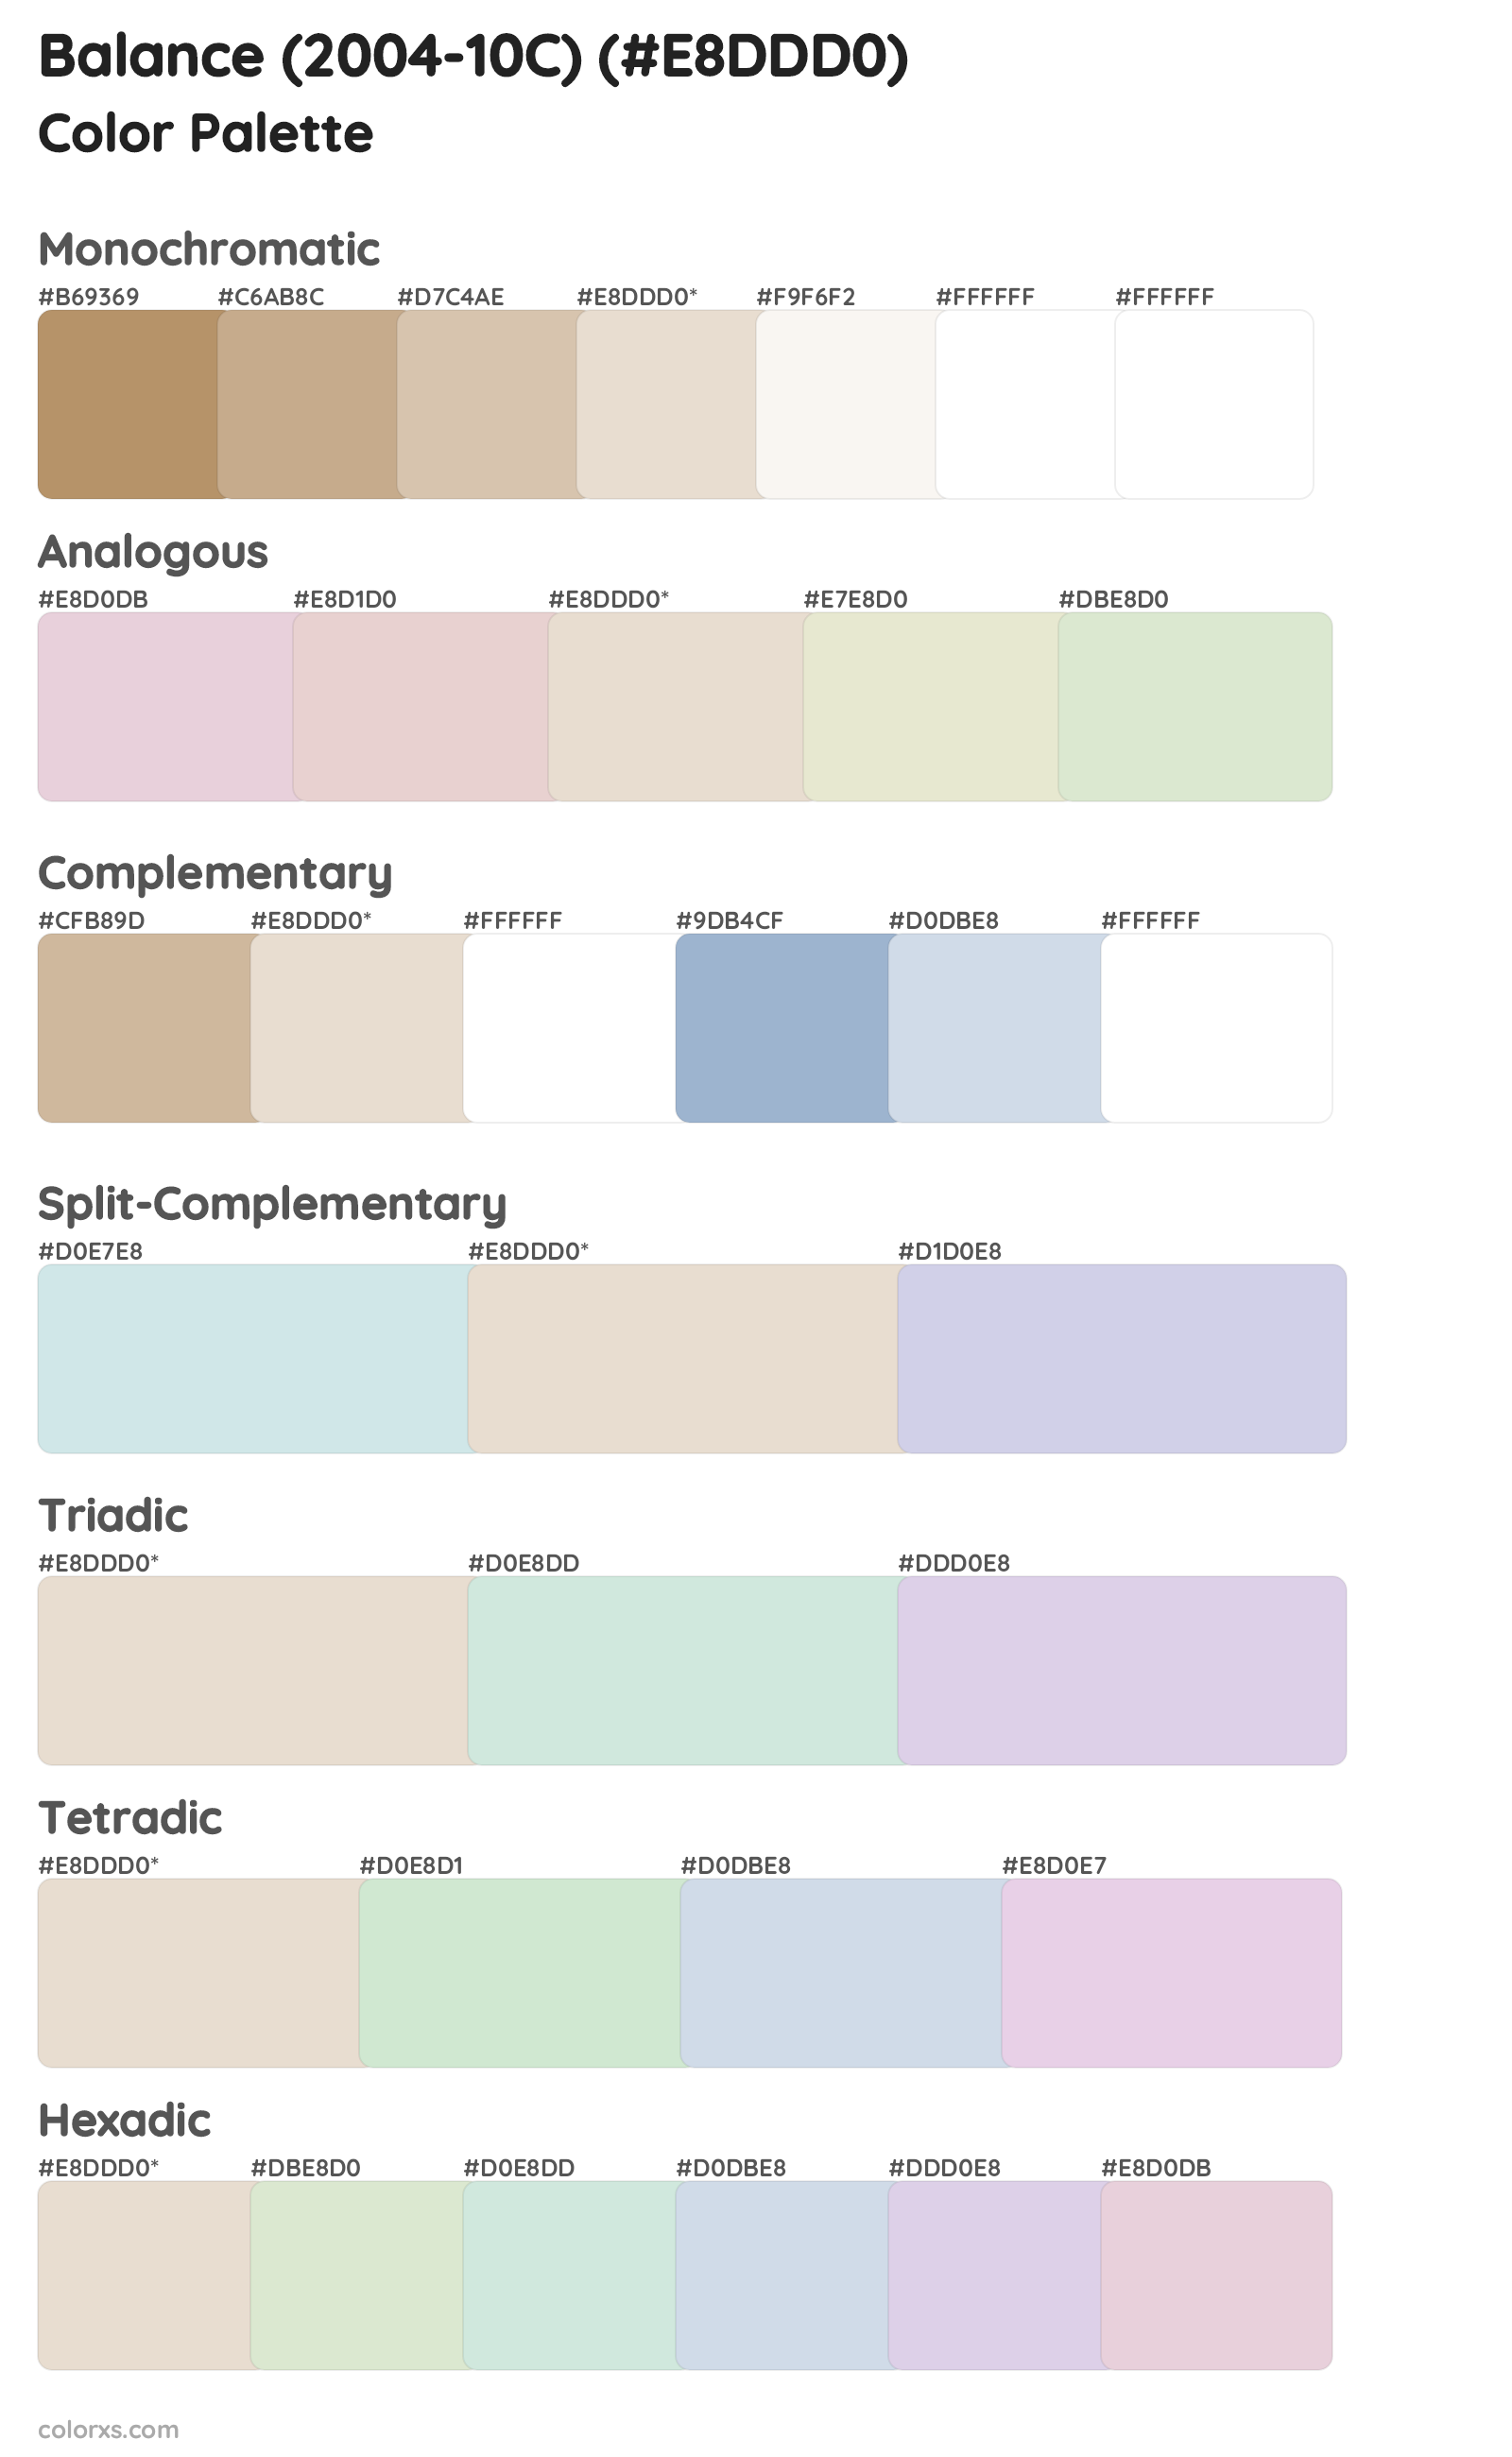 Balance (2004-10C) Color Scheme Palettes